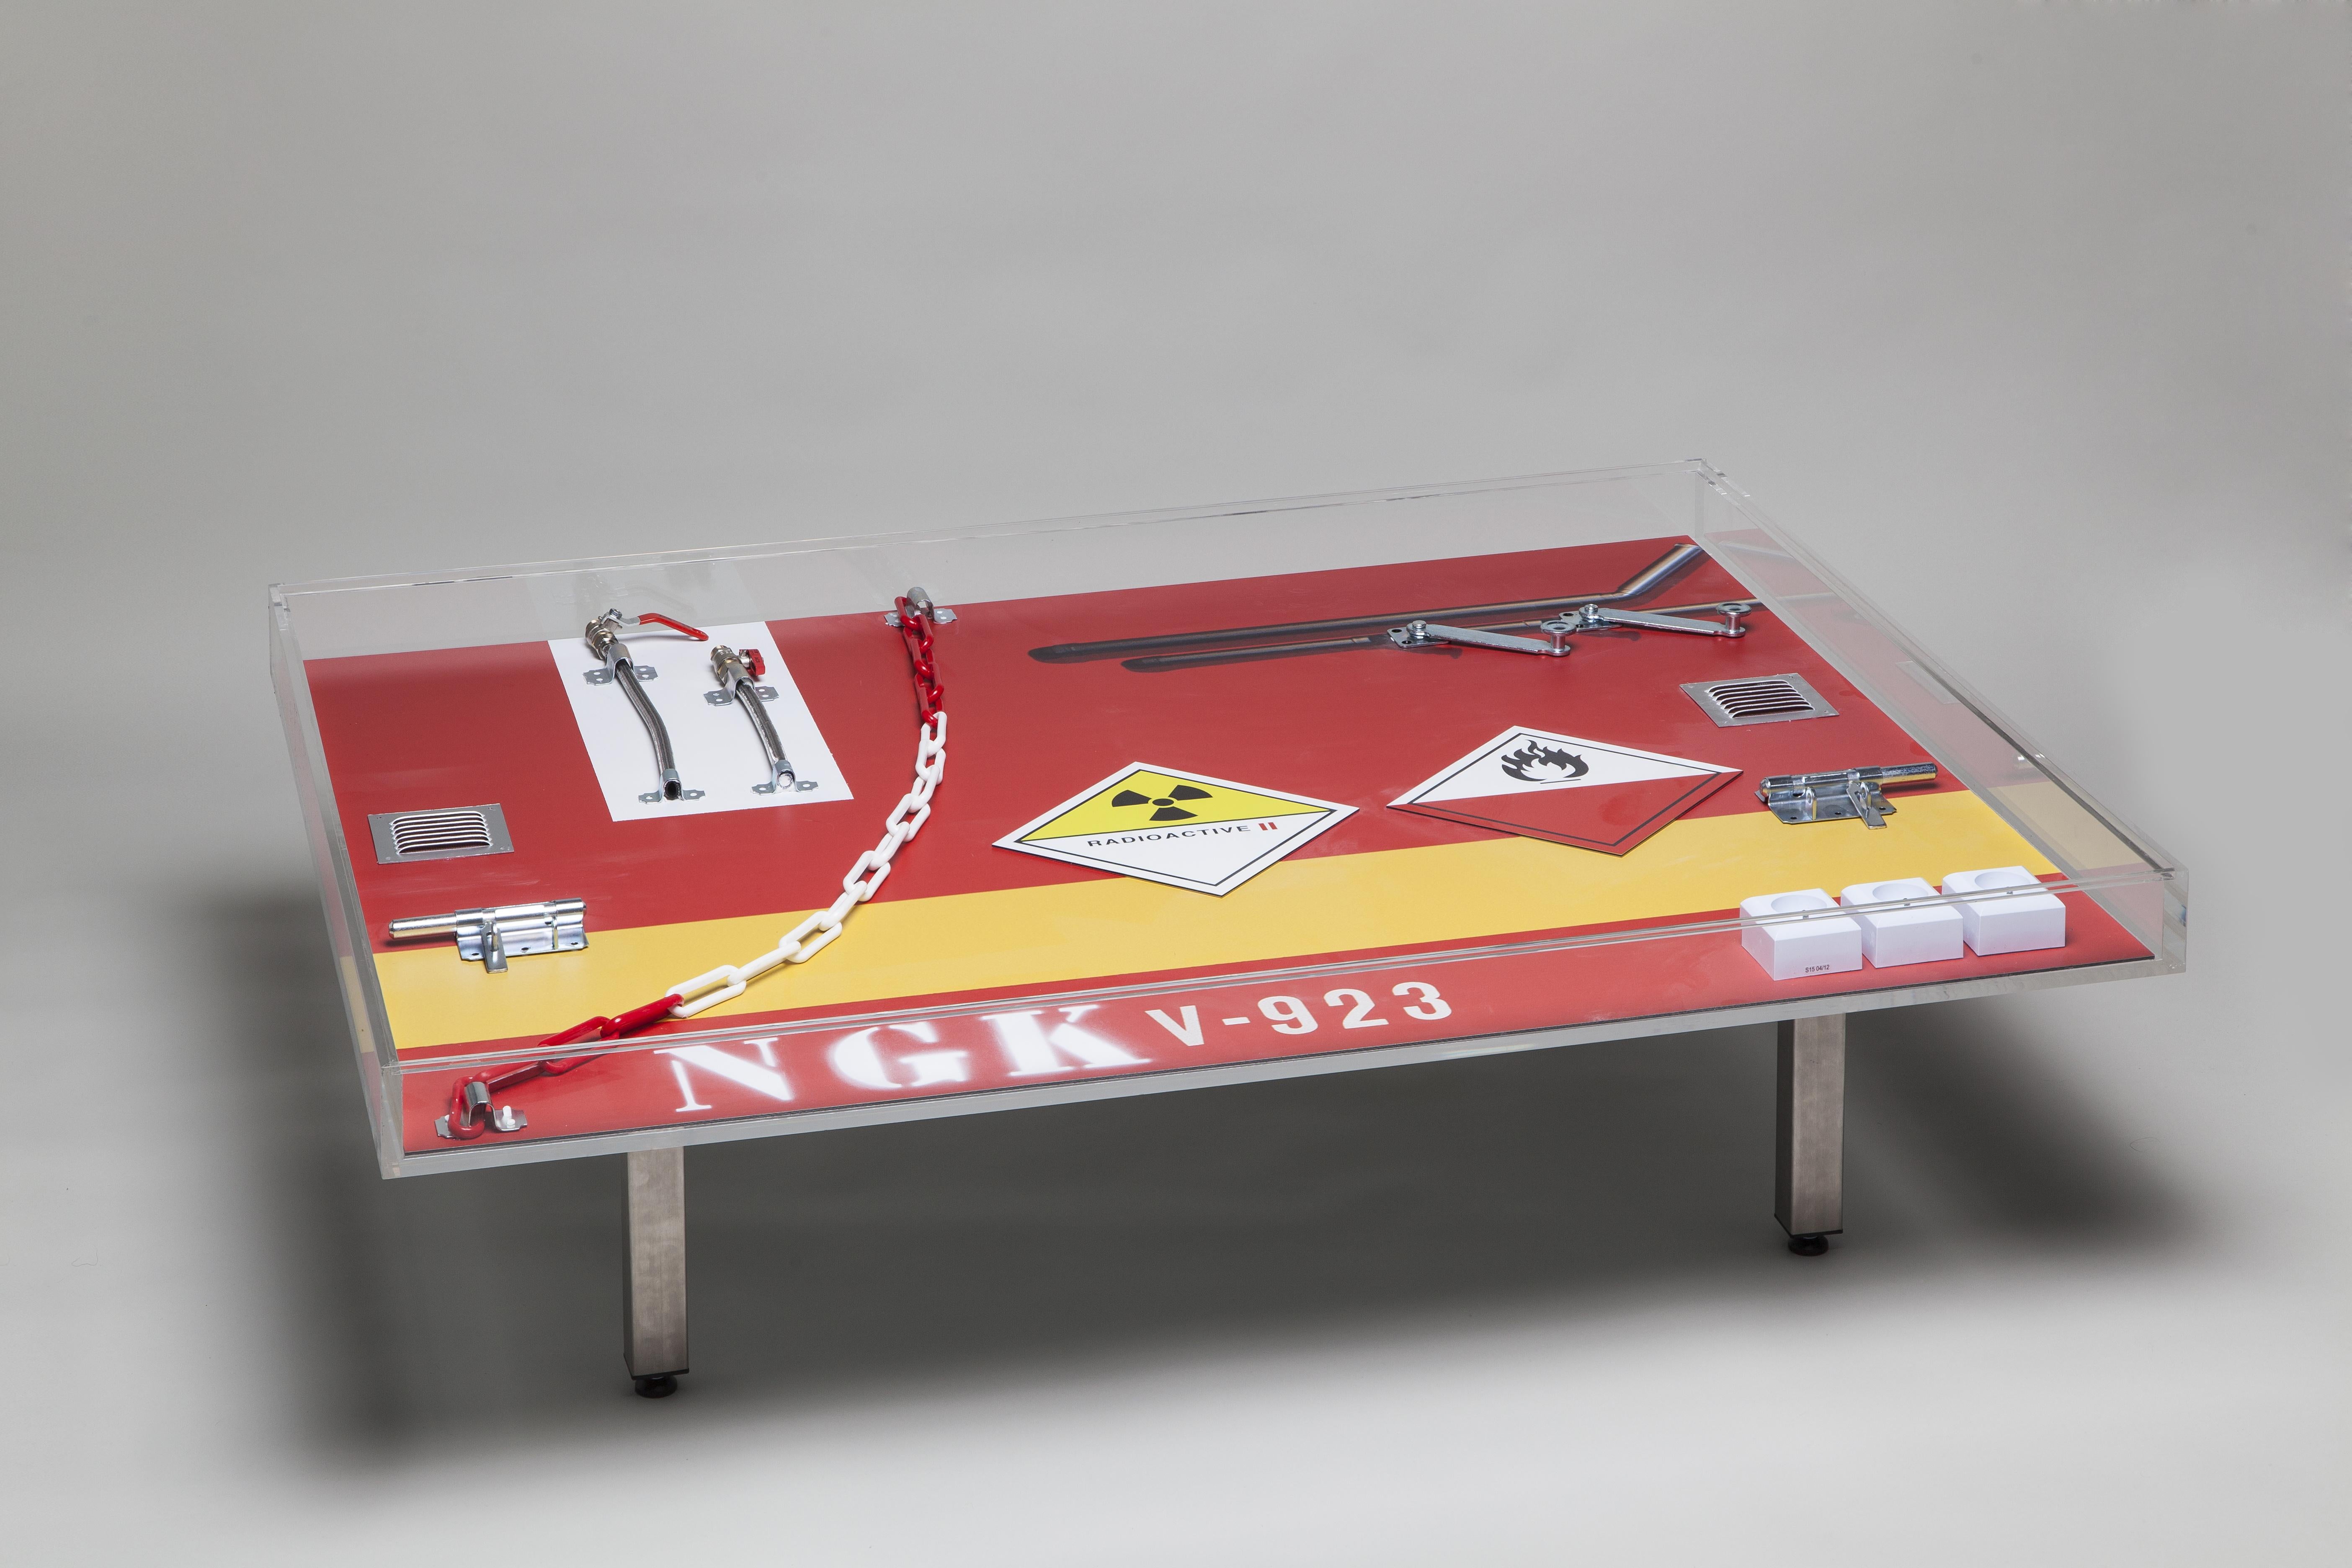 Peter Klasen NGK Table Coffee Table Artist's Design Table in Plexiglas Red Print